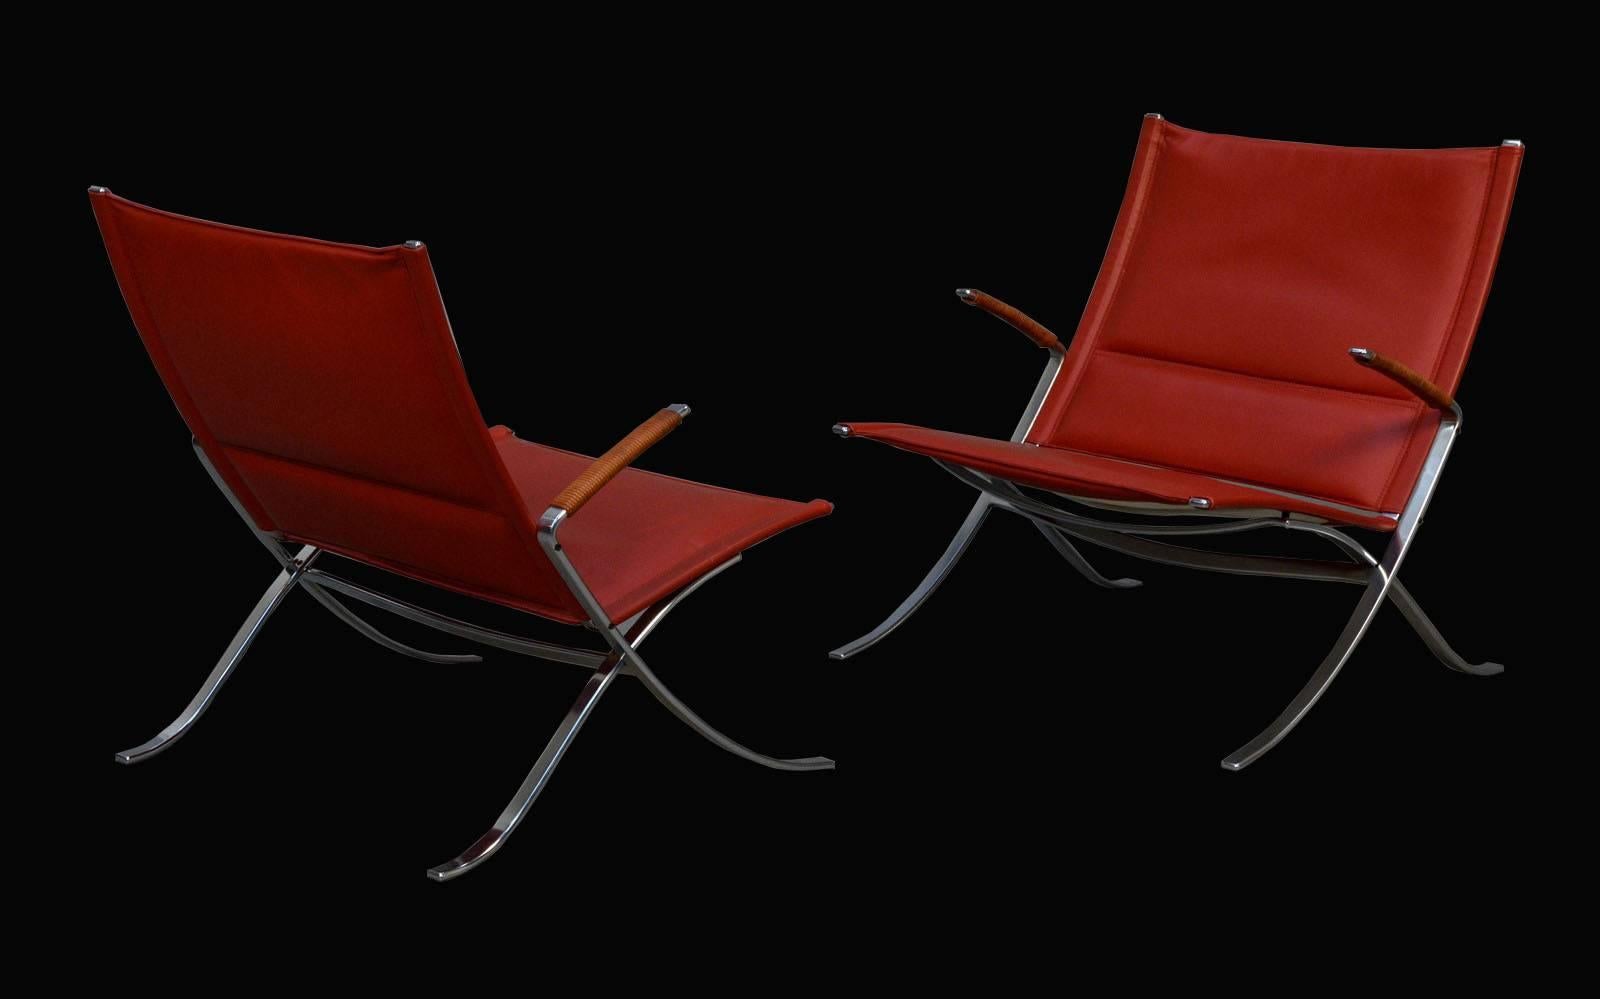 Ein atemberaubendes Paar X-Stühle von Jorgen Kastholm & Preben Fabricius für Alfred Kill aus Stahl und ochsenblutfarbenem Leder in Erstausgabe.